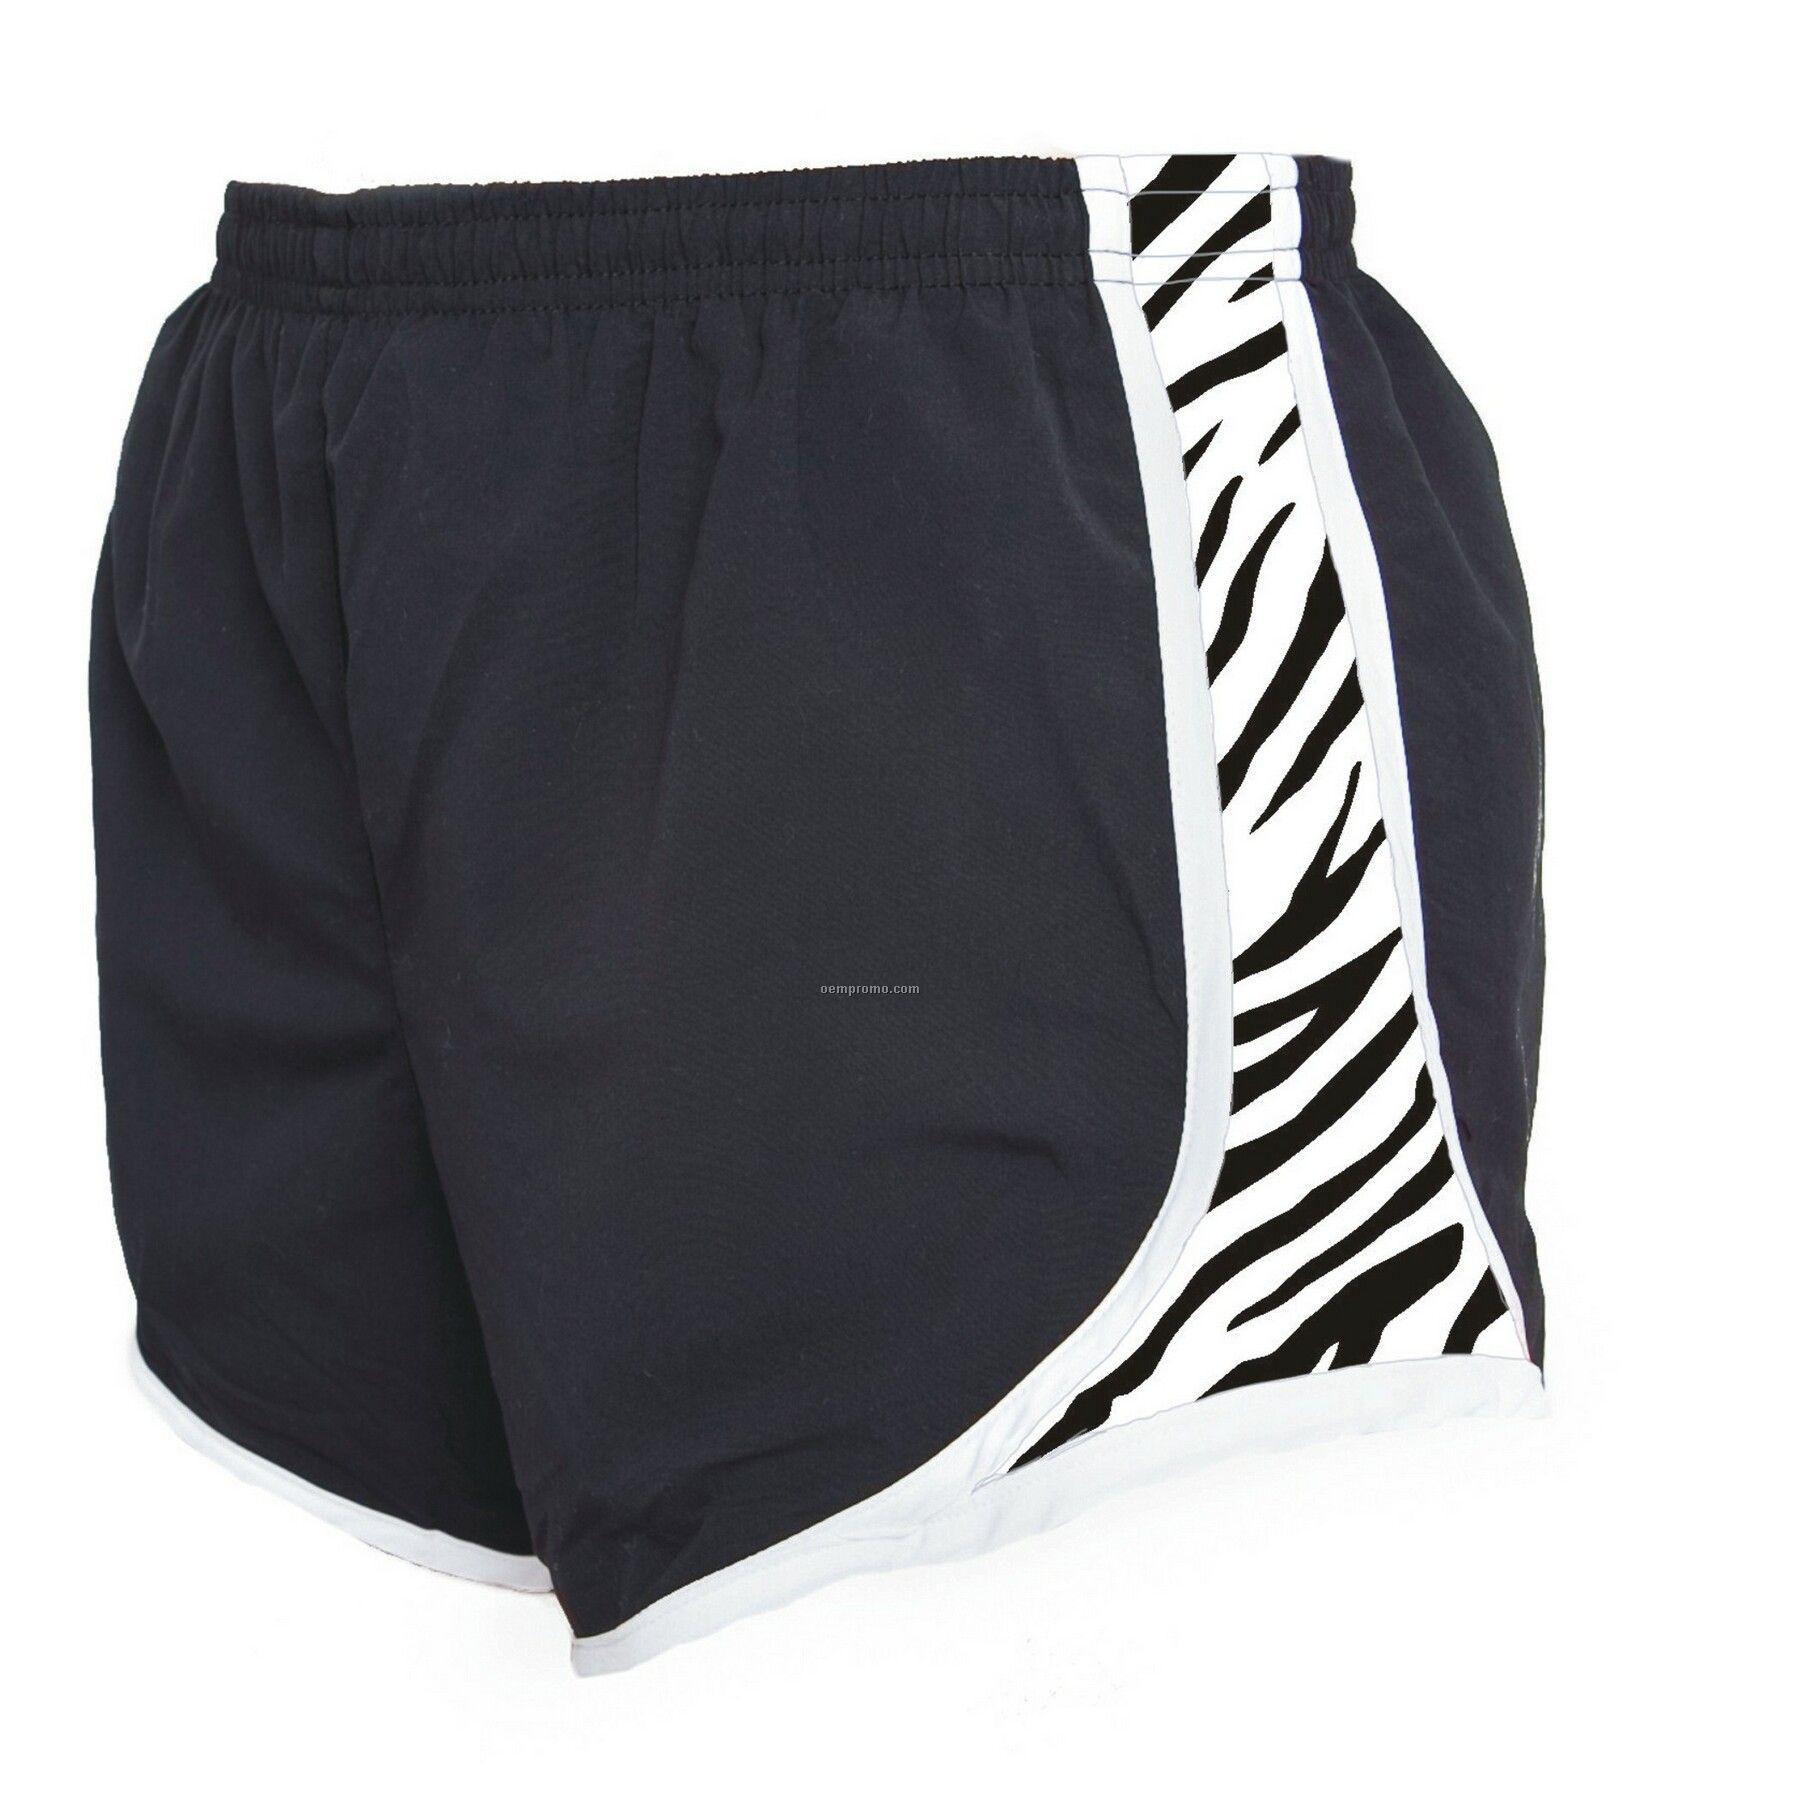 Youth Black/White Zebra Print Velocity Shorts